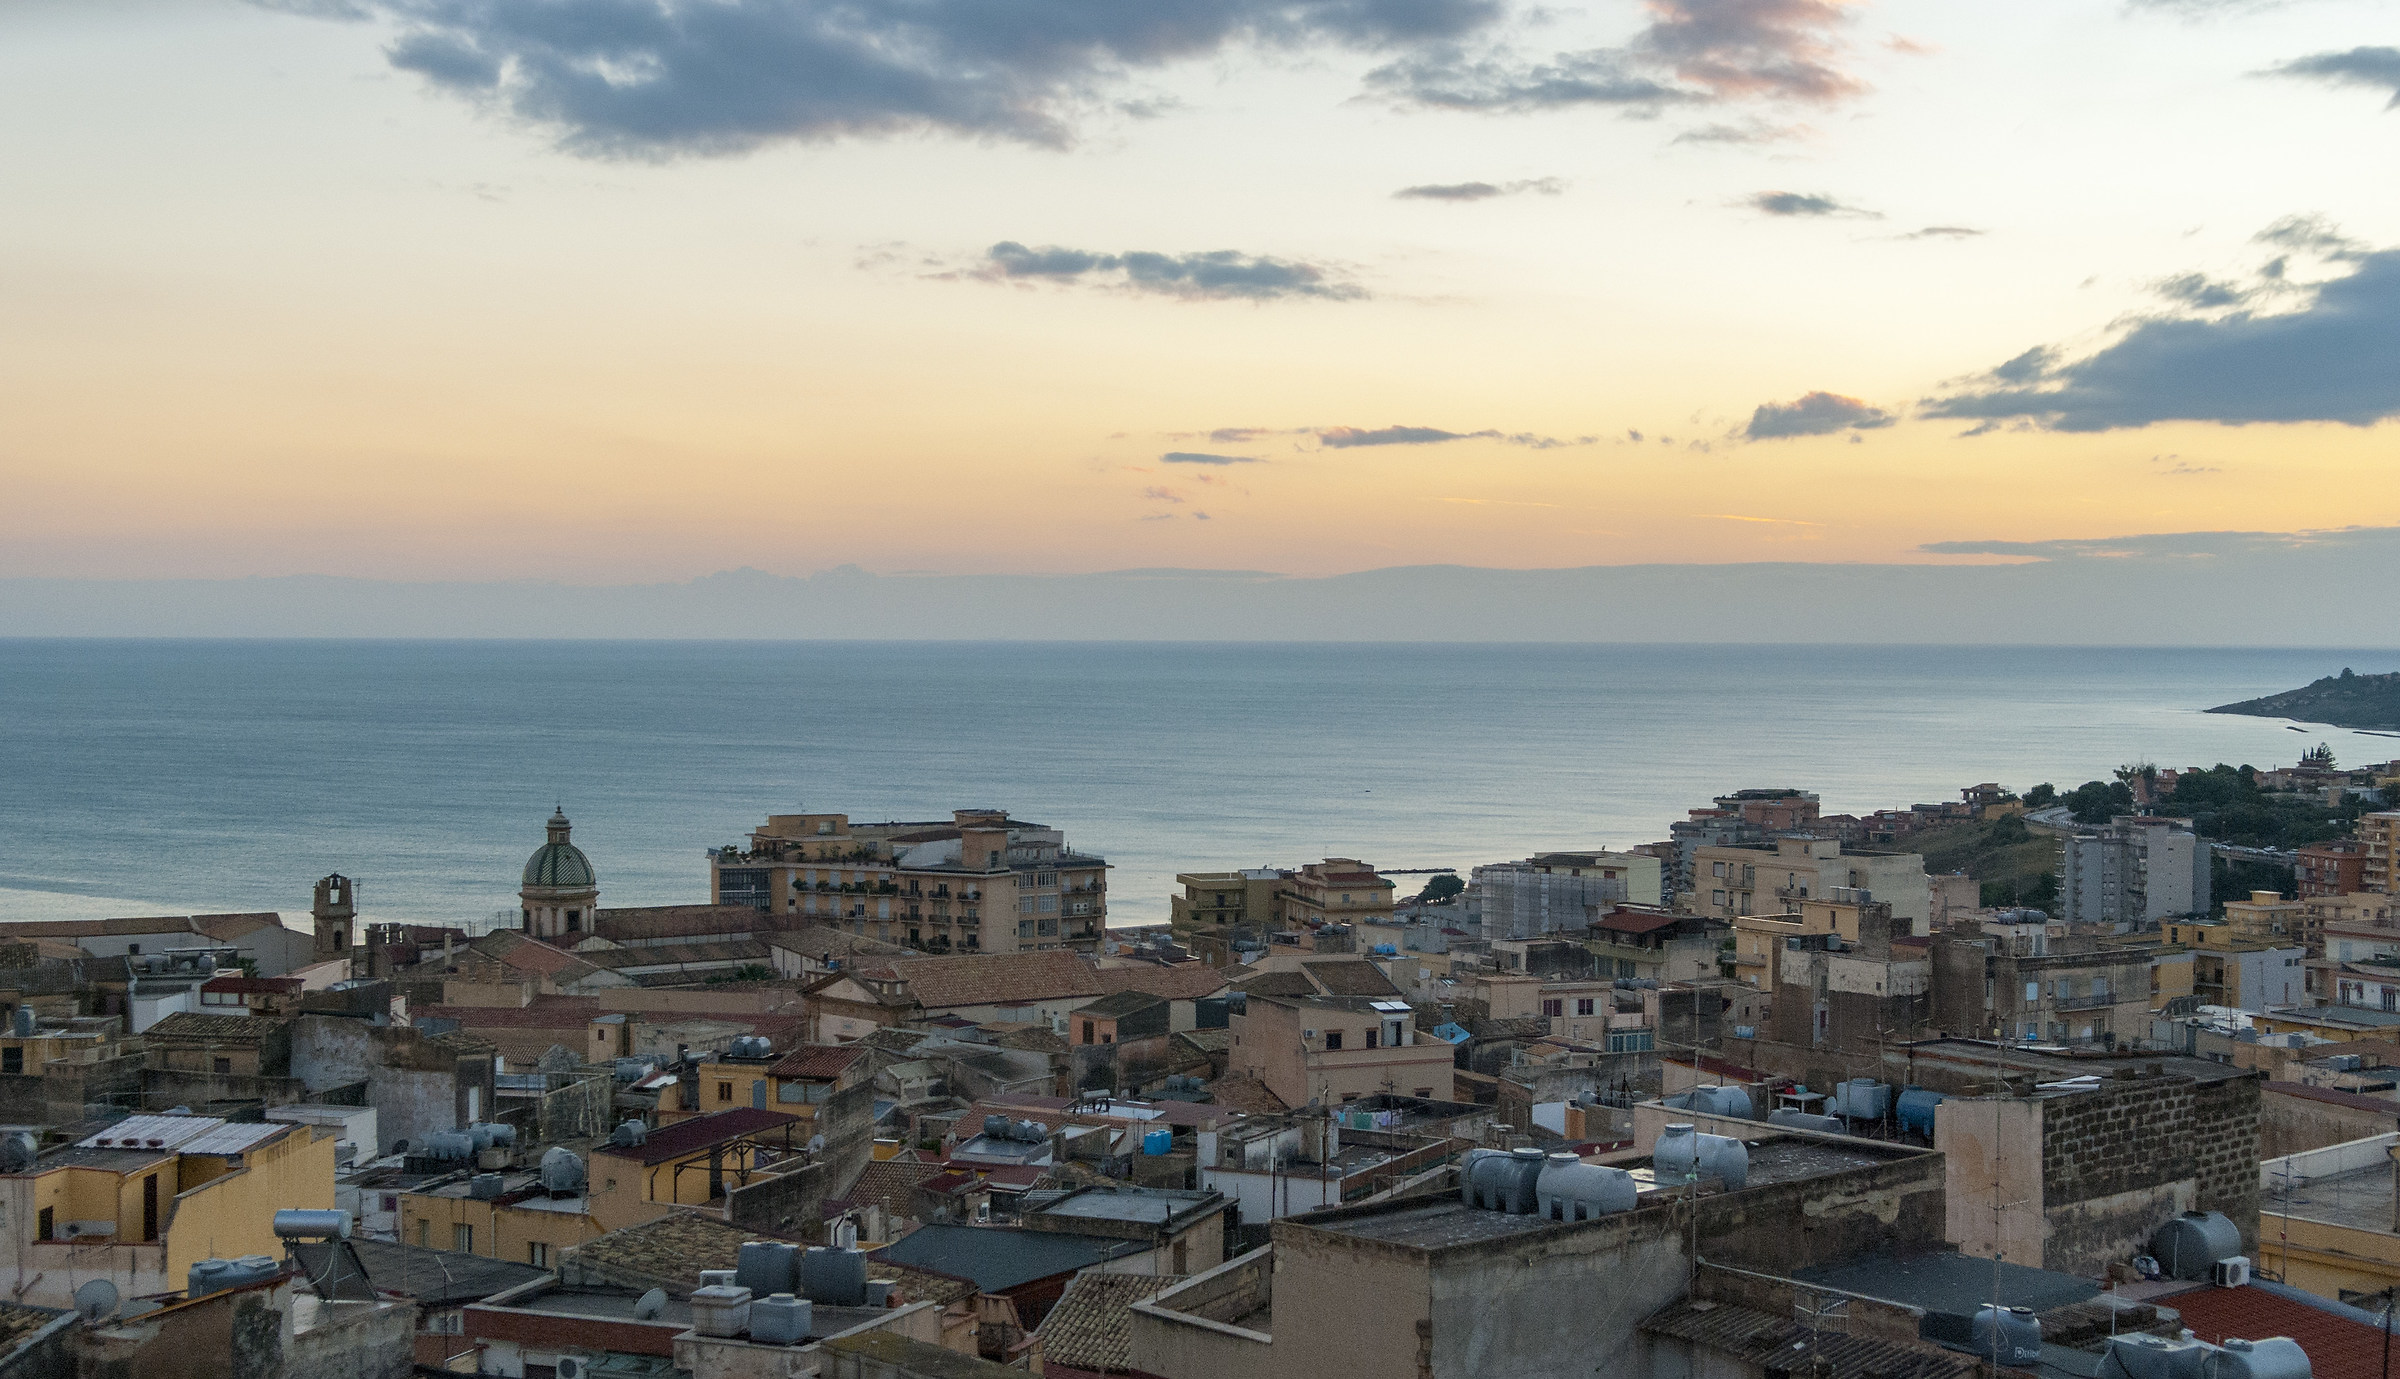 Sciacca overlooking the Mediterranean...